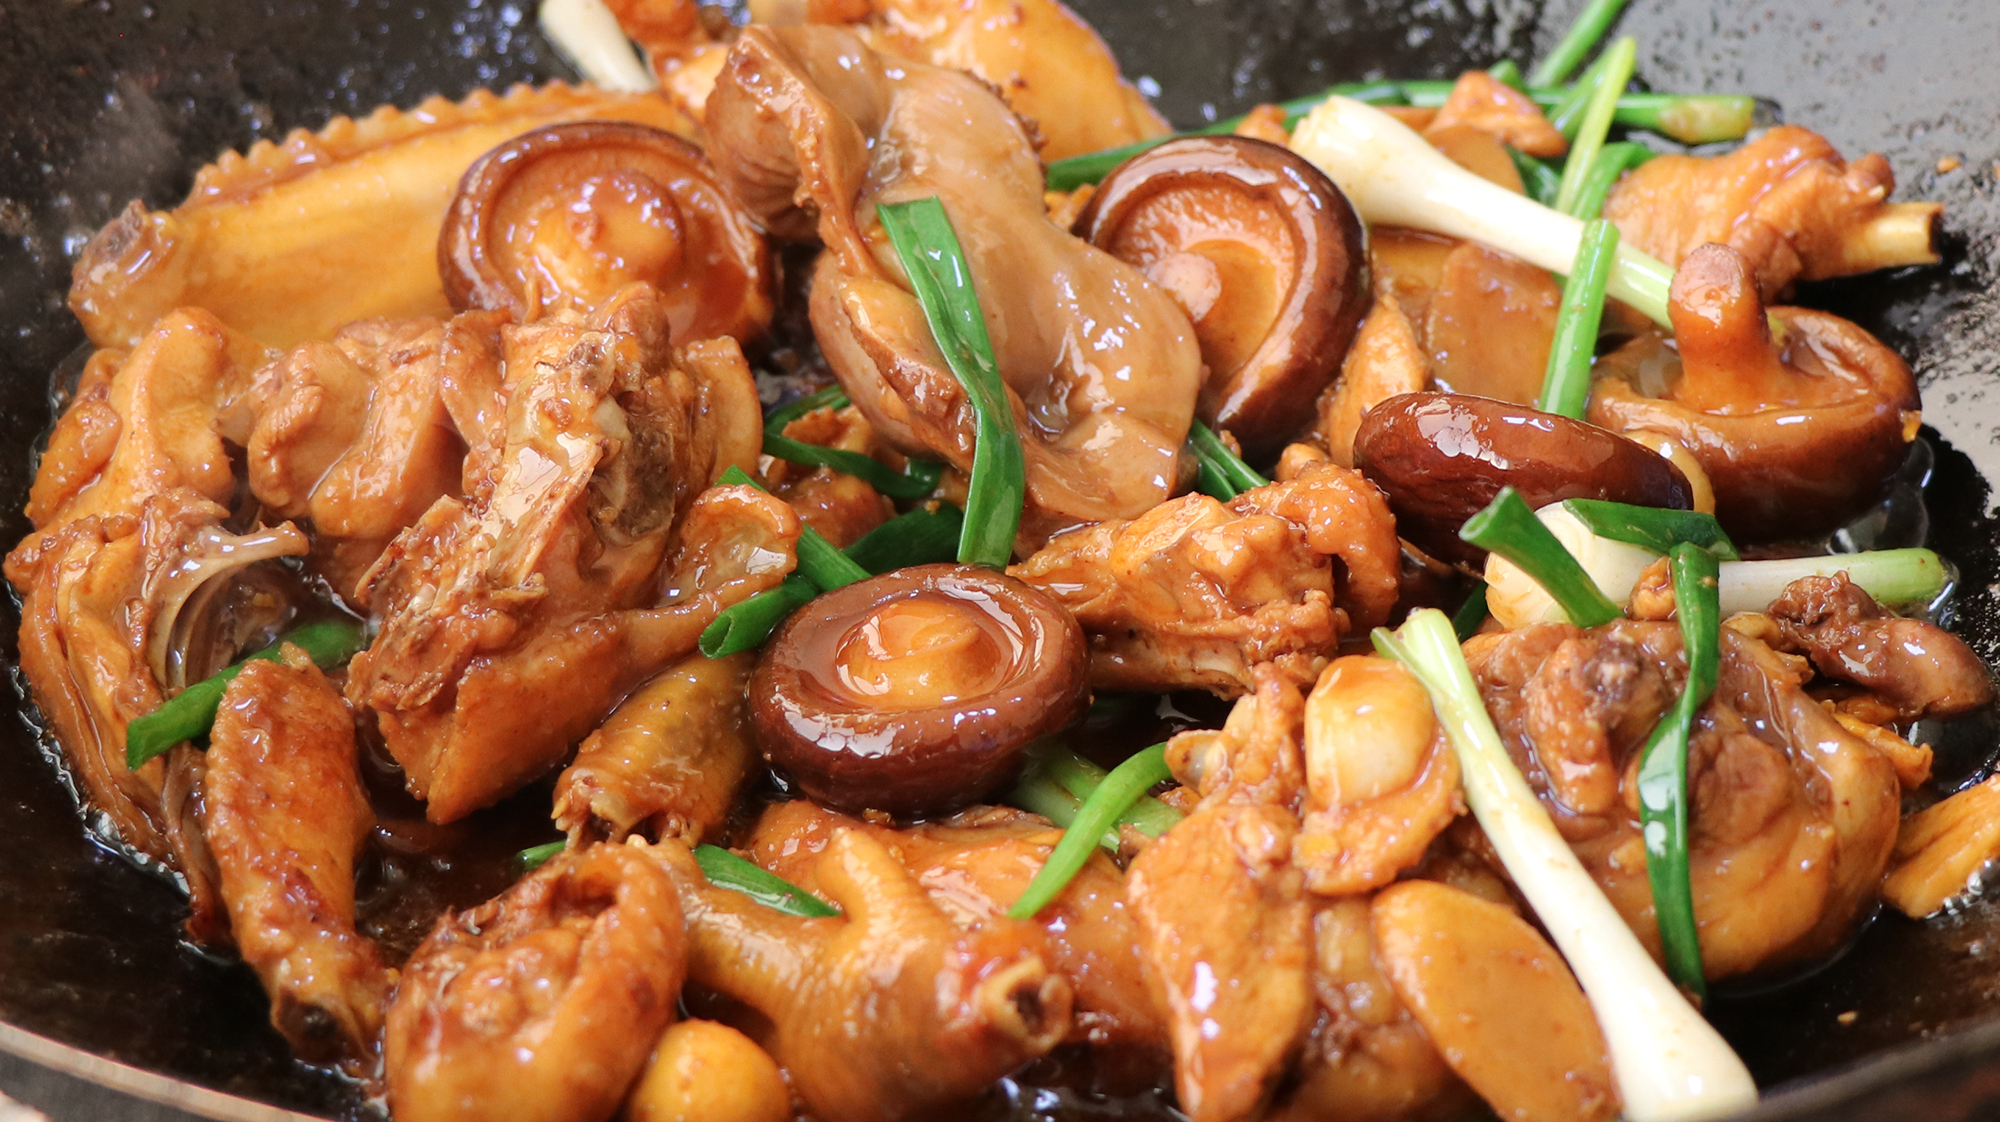 分享六道家常美食:香菇炒鸡肉上榜,蒜蓉蛏子吃起来那叫一个香!